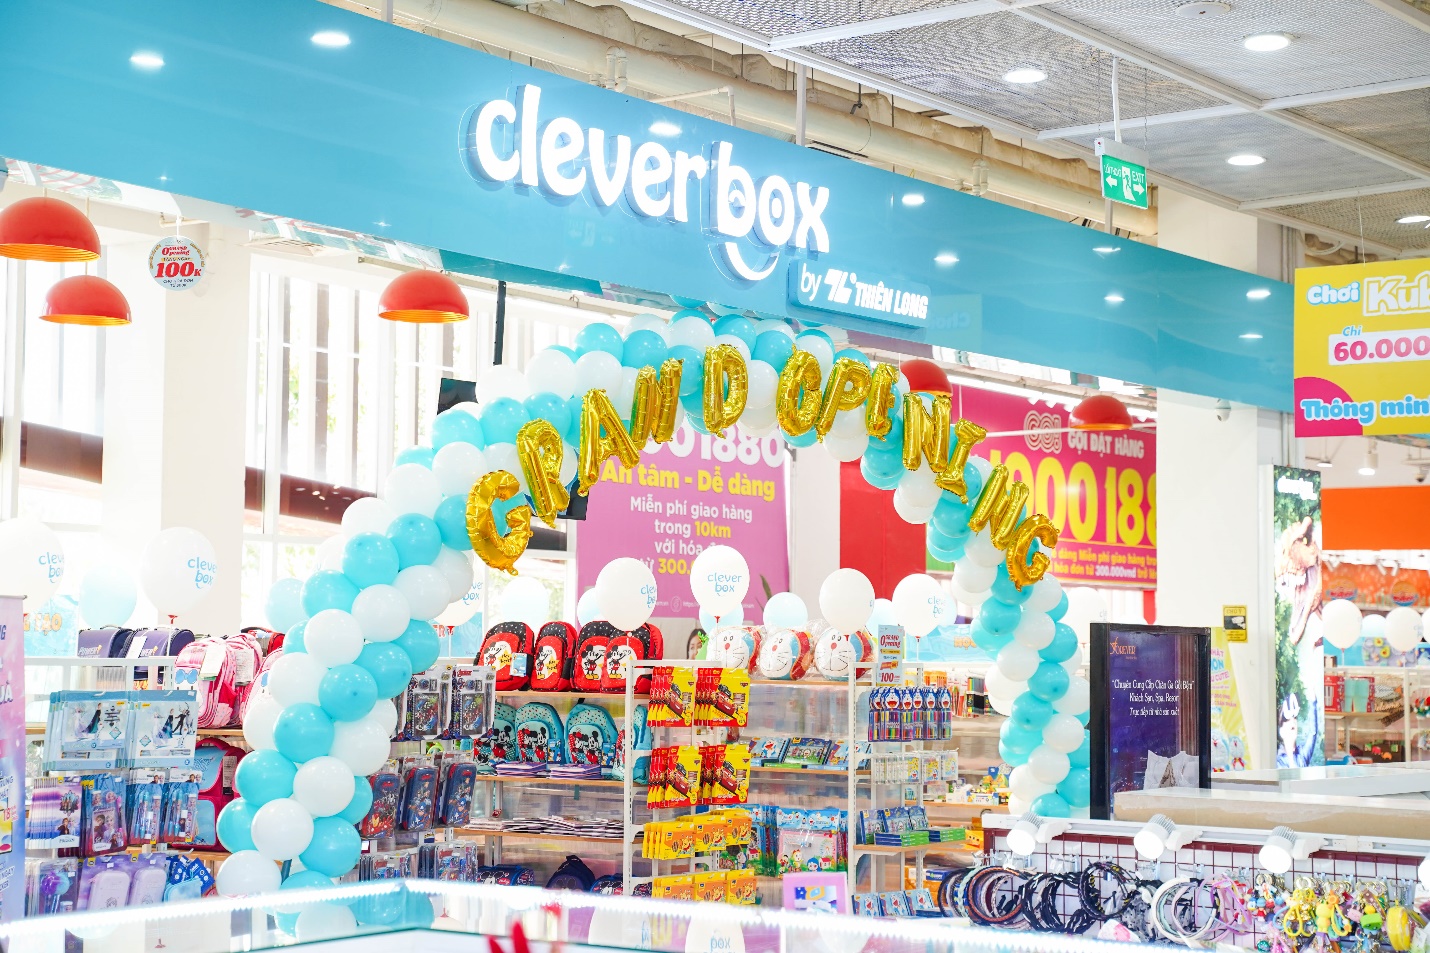 2 cửa hàng Cleverbox của Thiên Long khai trương trong tháng 9: Nâng cao trải nghiệm người dùng